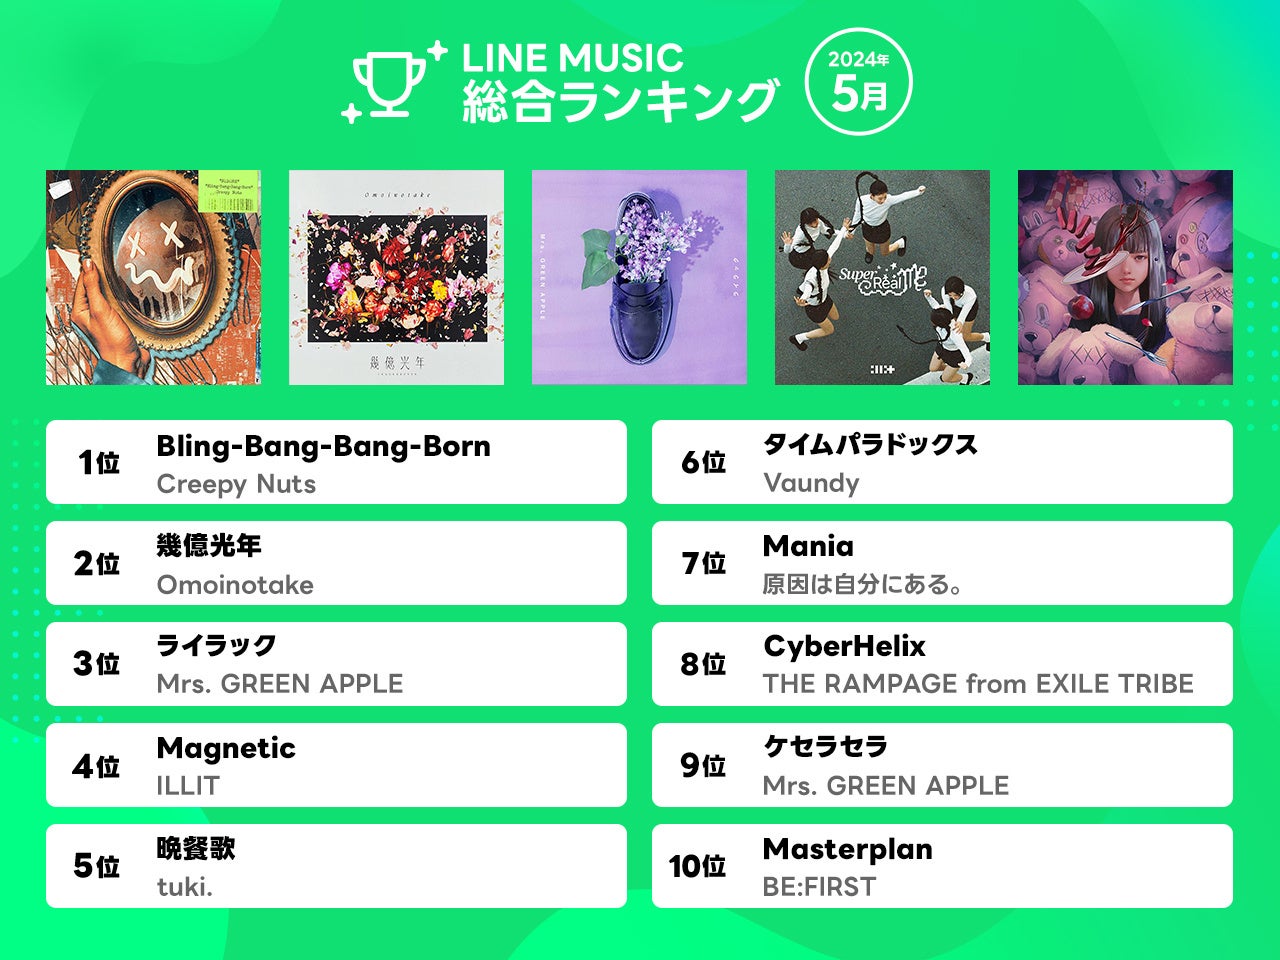 【LINE MUSIC 2024年5月月間ランキング】4か月連続でCreepy Nuts「Bling-Bang-Bang-Born」が1位をキープ